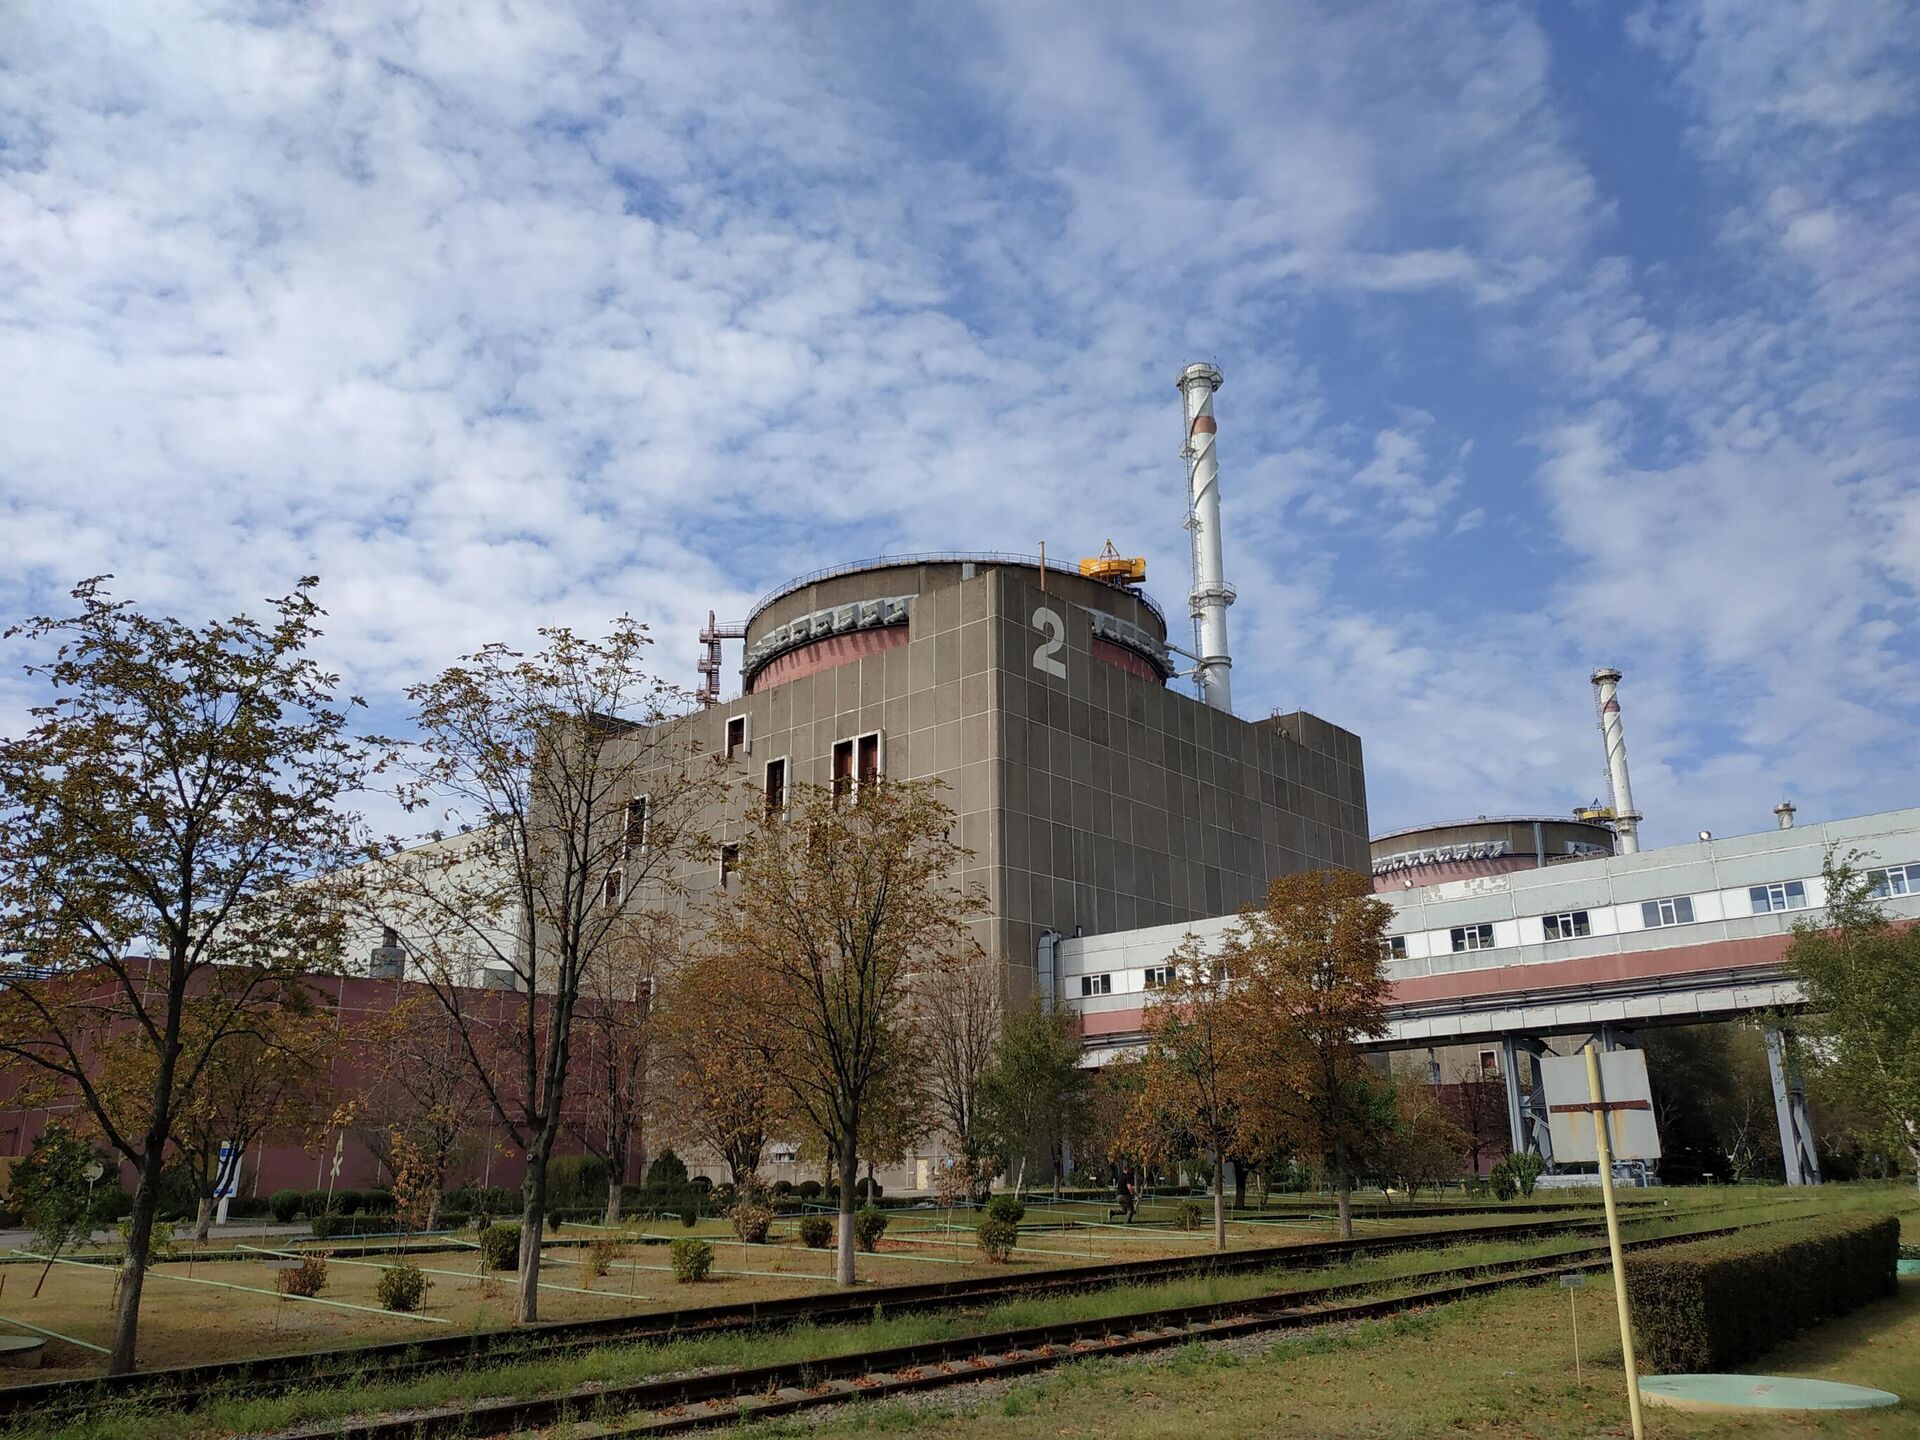 Обстановка на территории Запорожской атомной электростанции, 1 сентября 2022 года - Sputnik Латвия, 1920, 02.09.2022